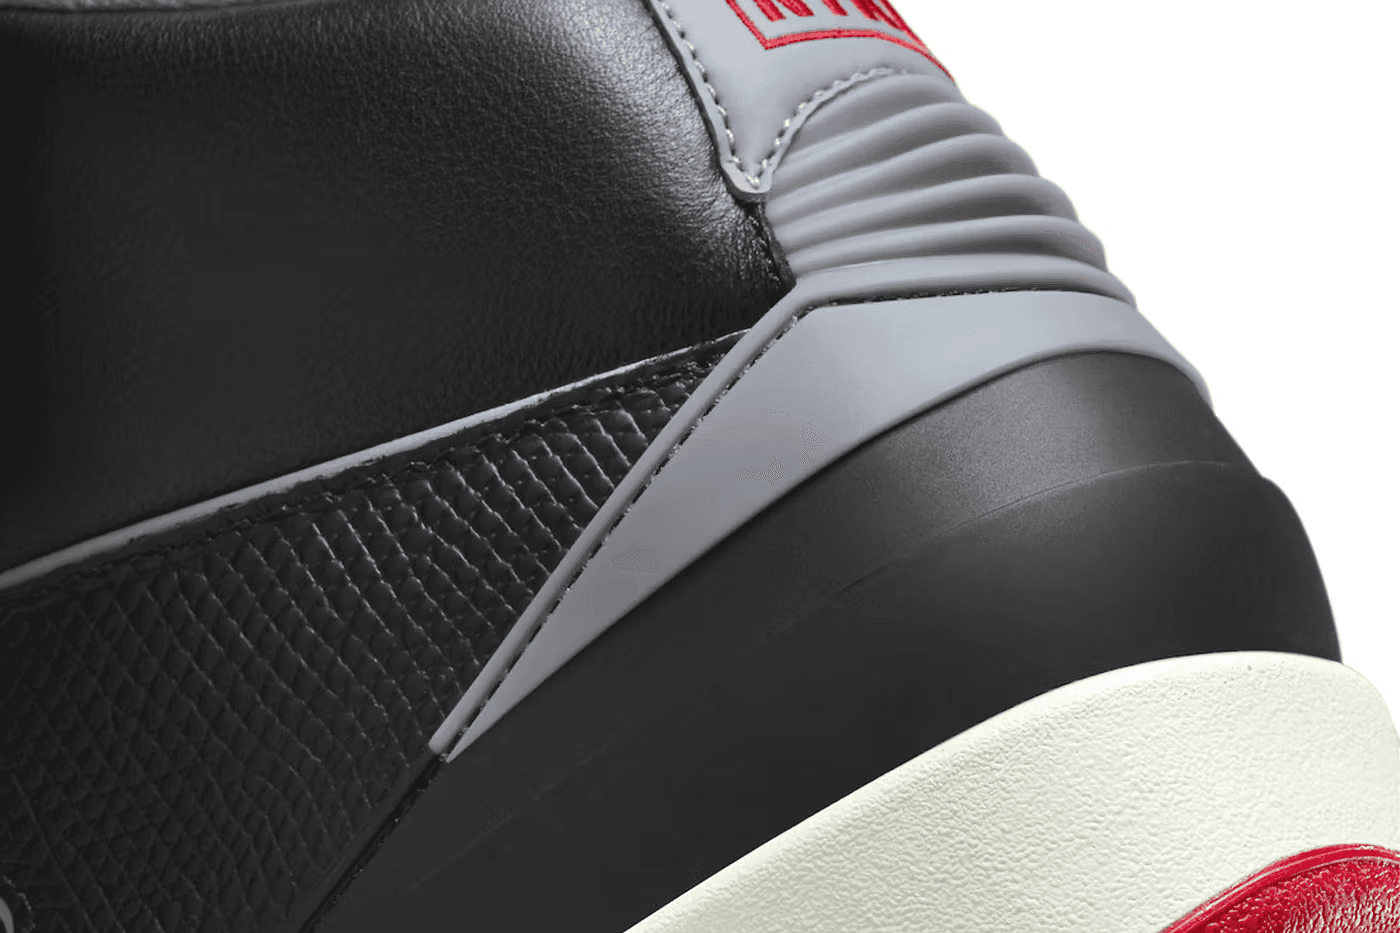 The Air Jordan 2 “Black Cement” detail hak